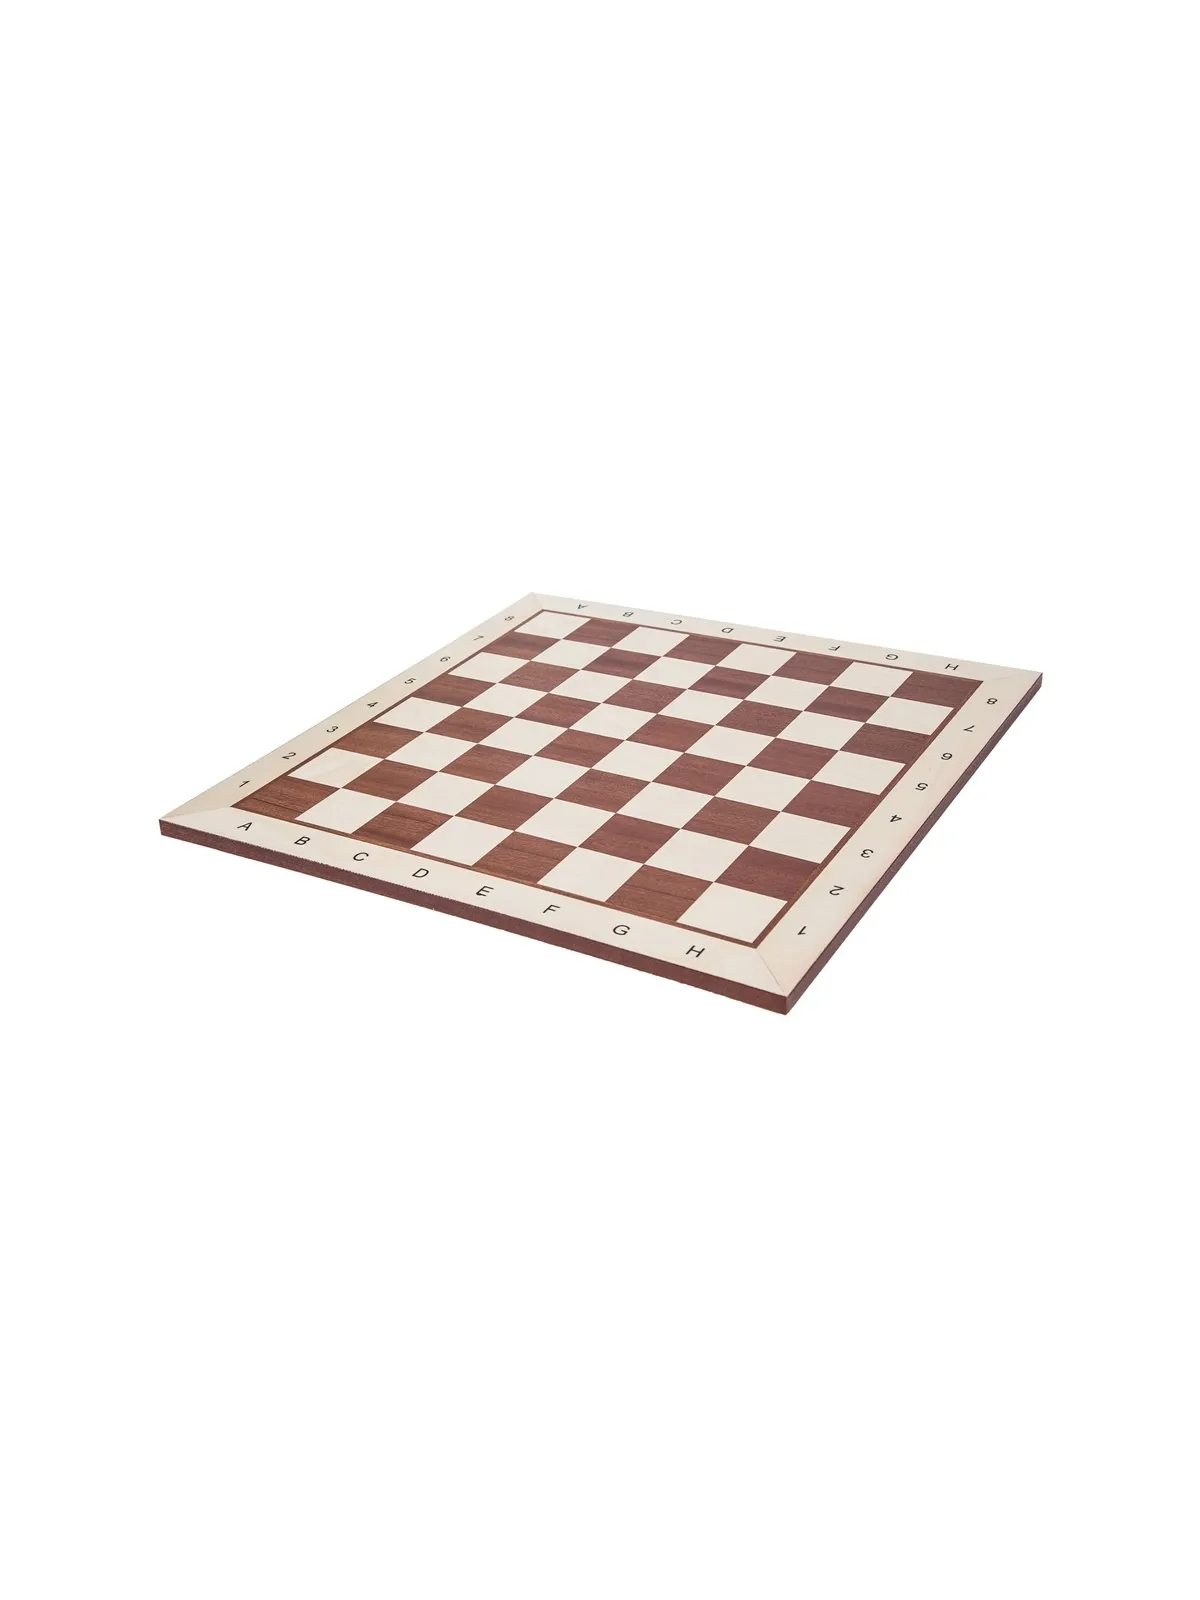 Chessboard No. 6 - Mahagony BL